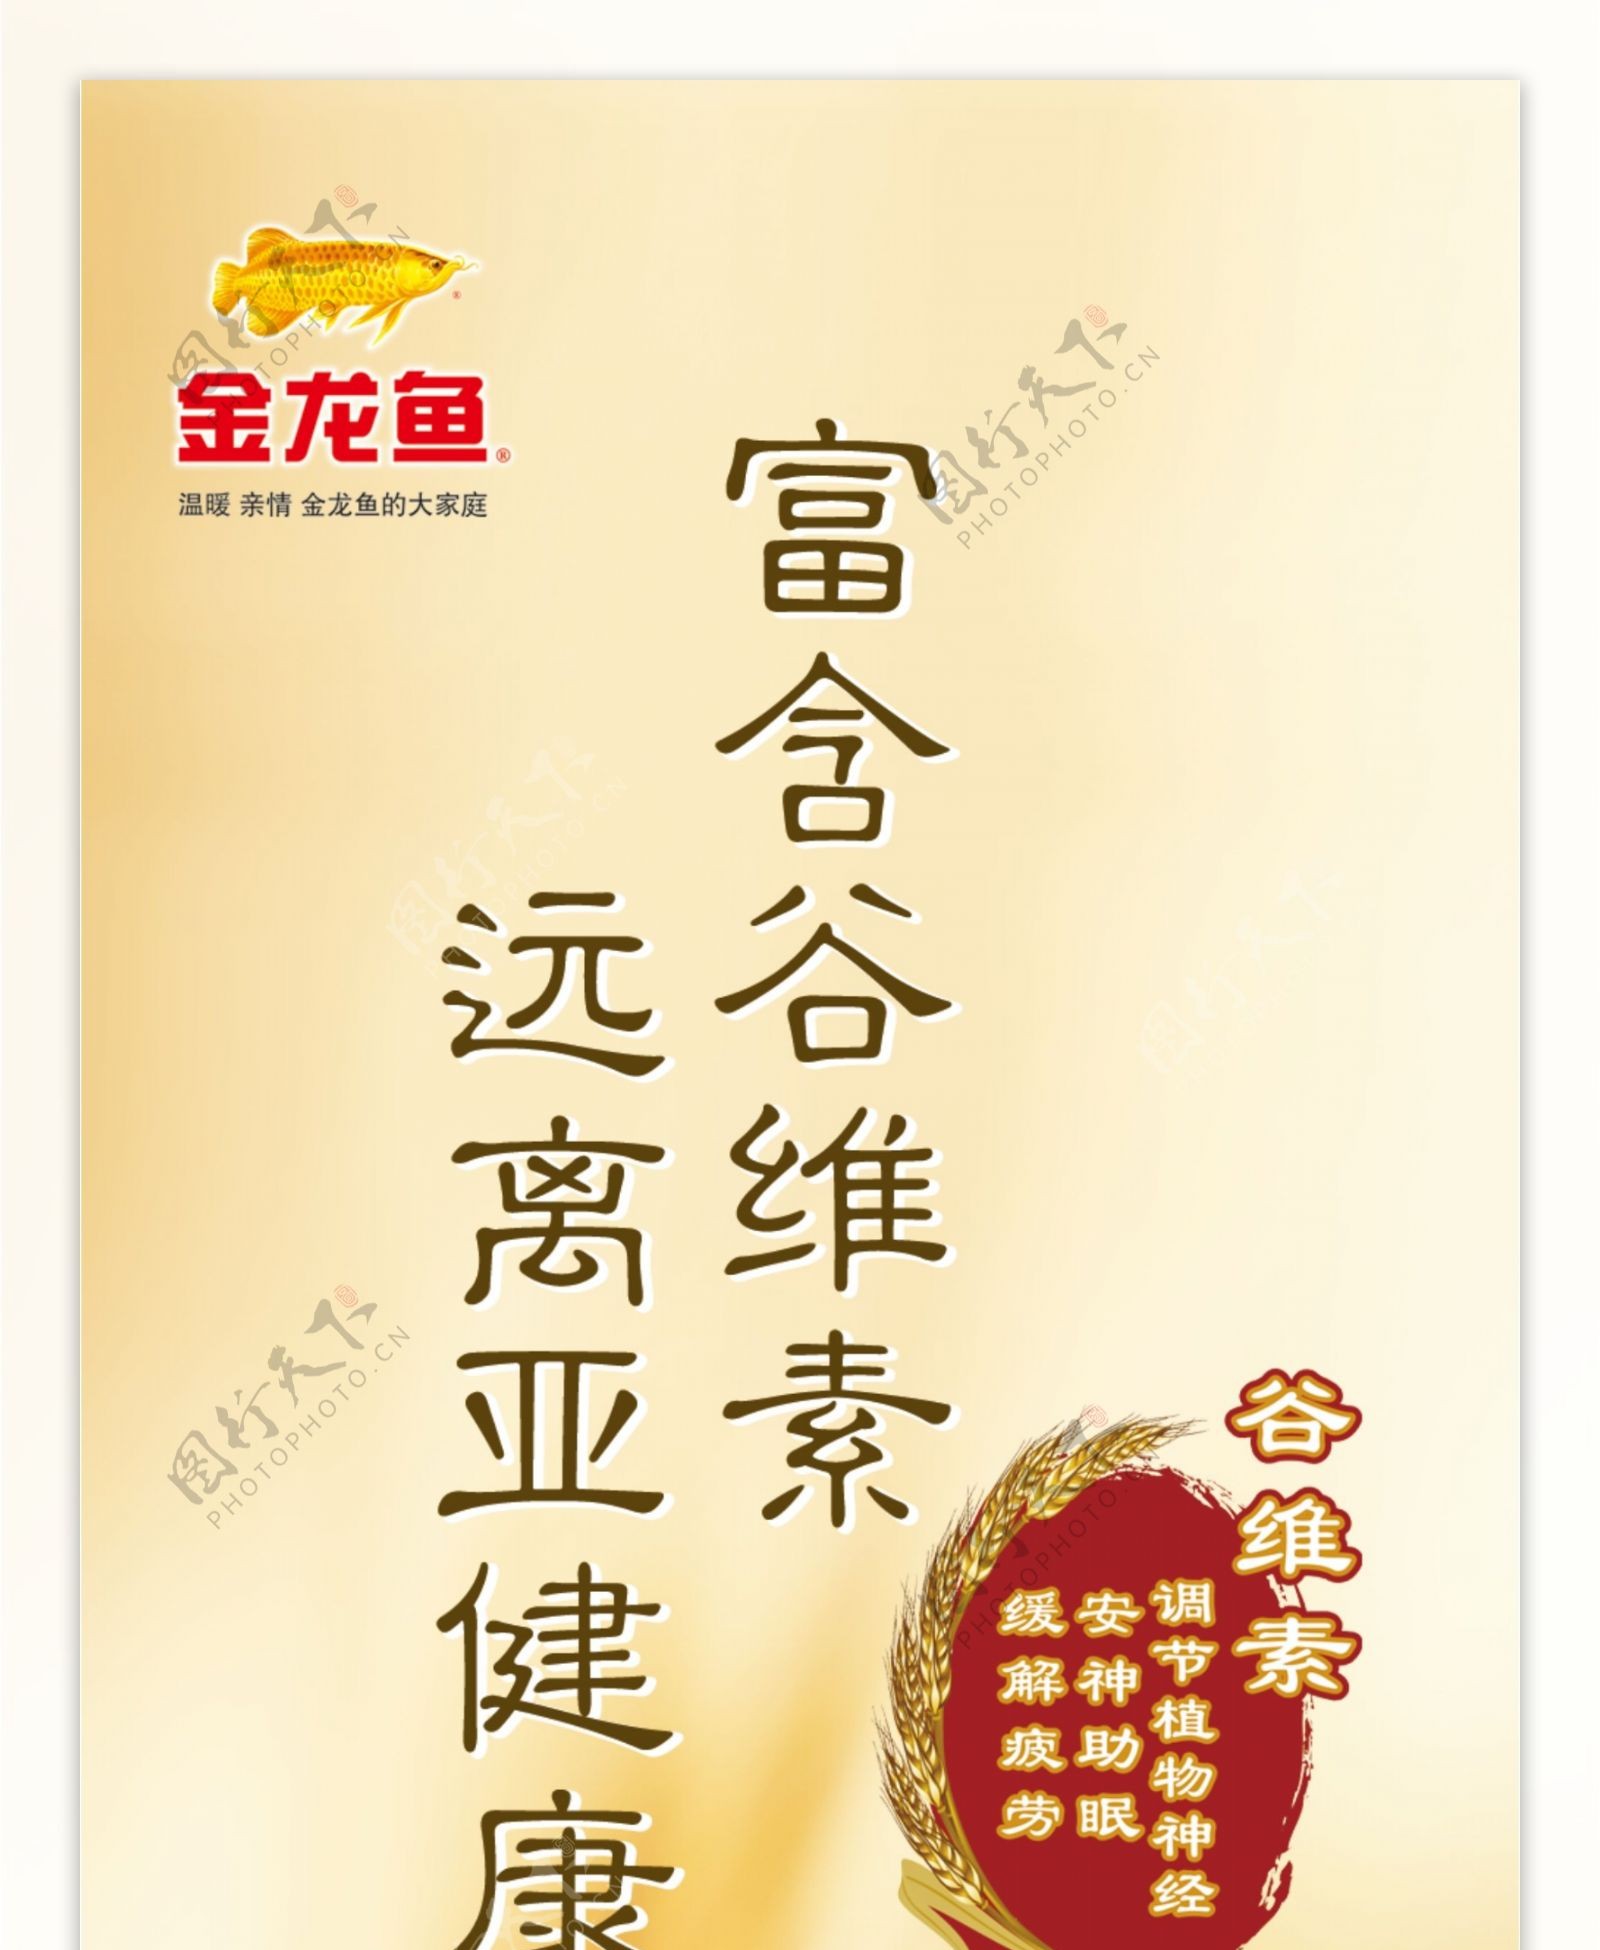 金龙鱼稻米油广告金龙鱼与稻谷合层图片